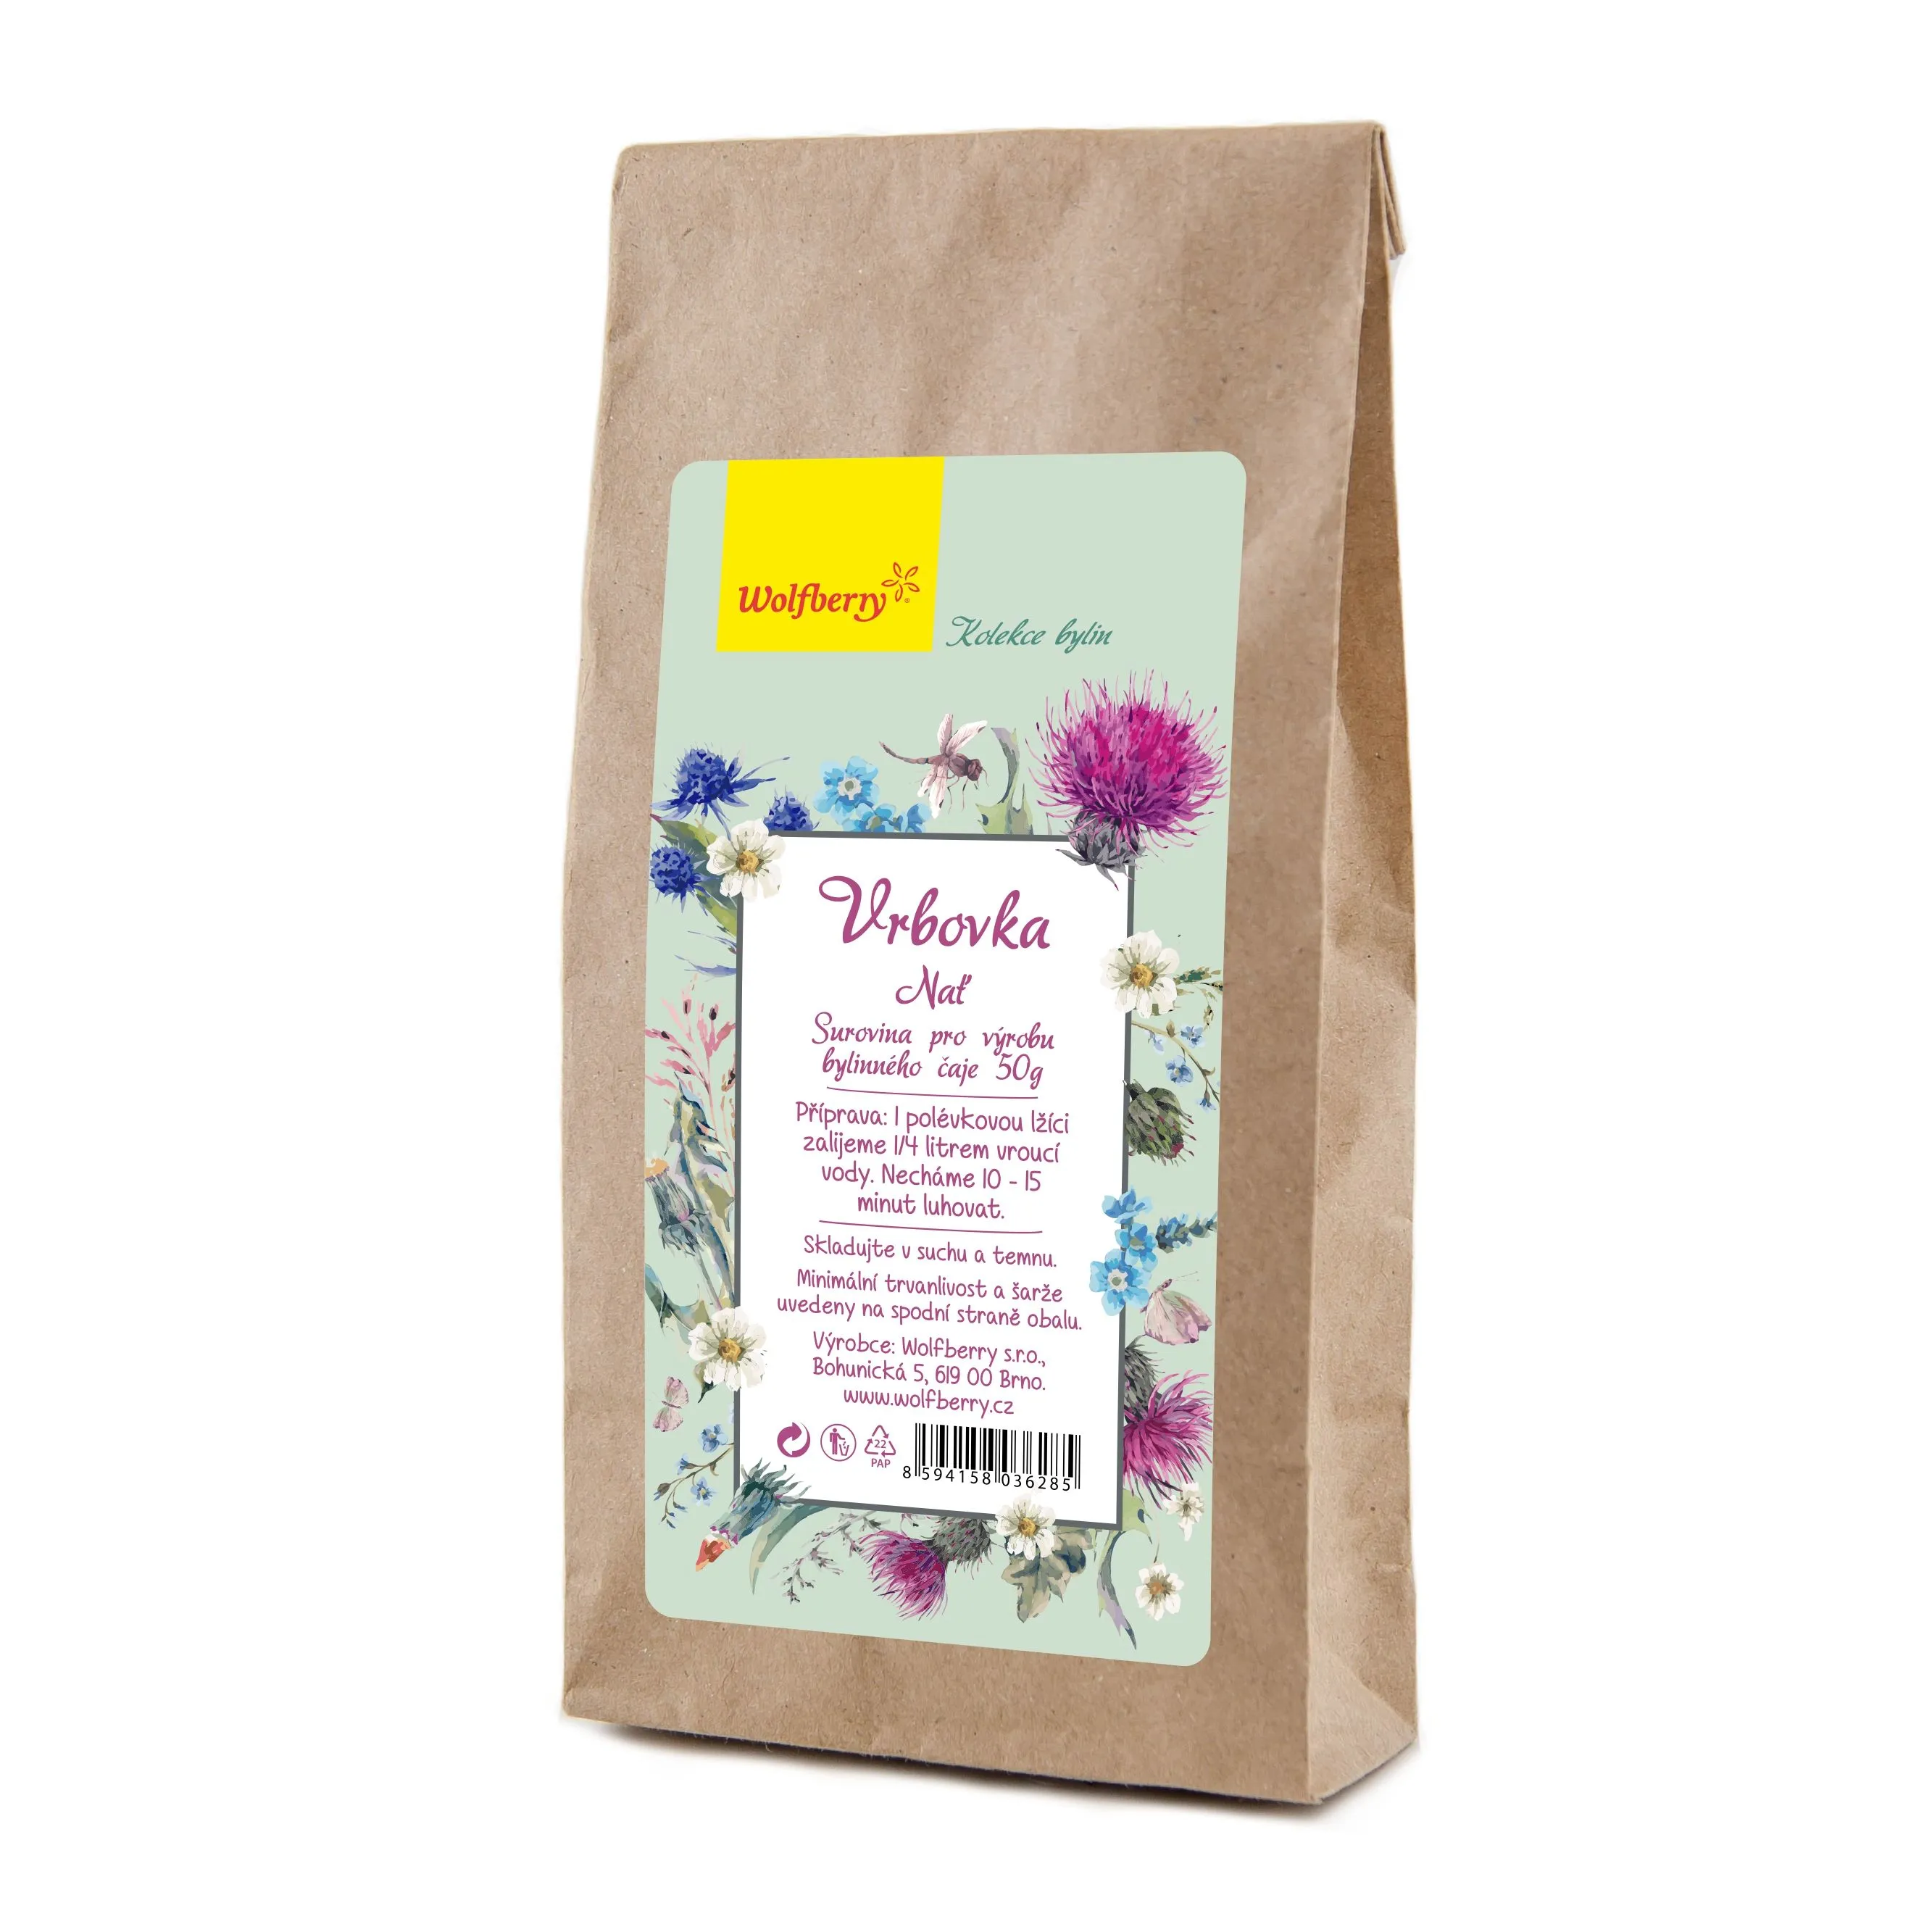 Wolfberry Vrbovka nať bylinný čaj sypaný 50 g